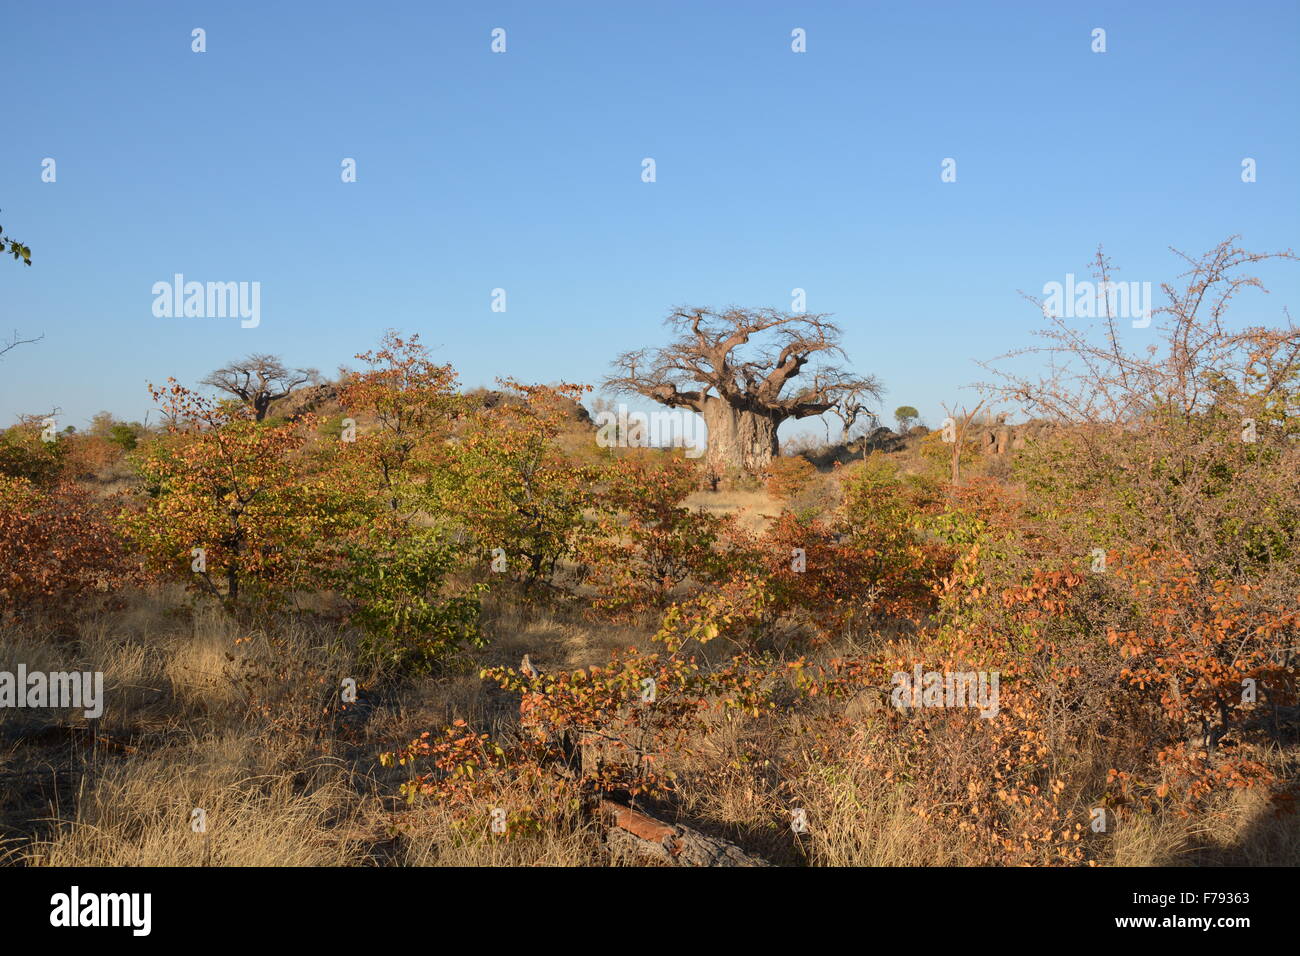 Baobab antique que l'on croit être autour de 1 000 ans dans la région de Tuli au Botswana. Pendant la saison sèche quand les feuilles ont baissé. Banque D'Images